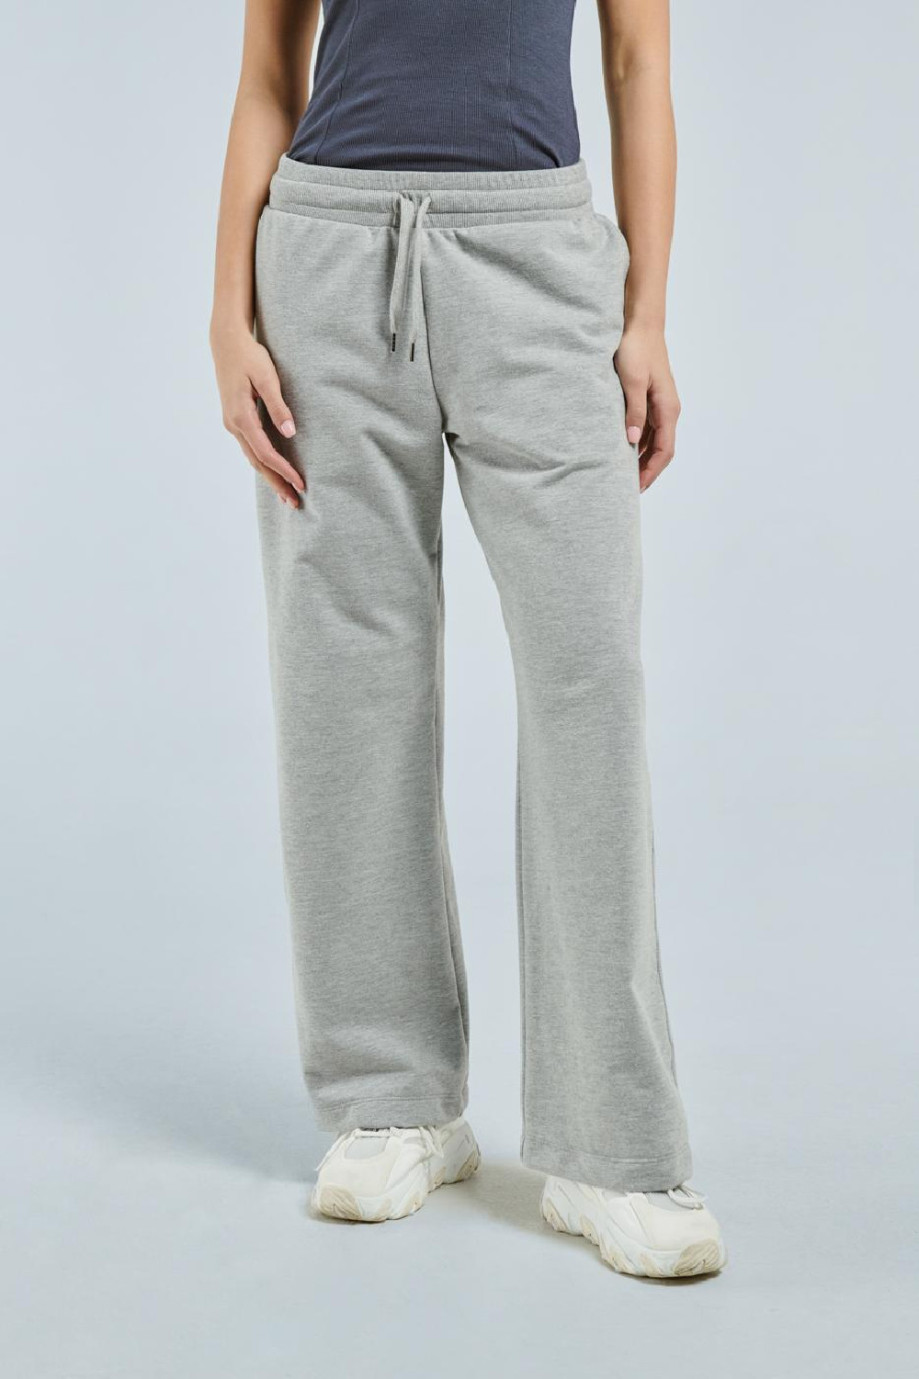 Pantalón jogger gris claro con bota ancha y bolsillos laterales